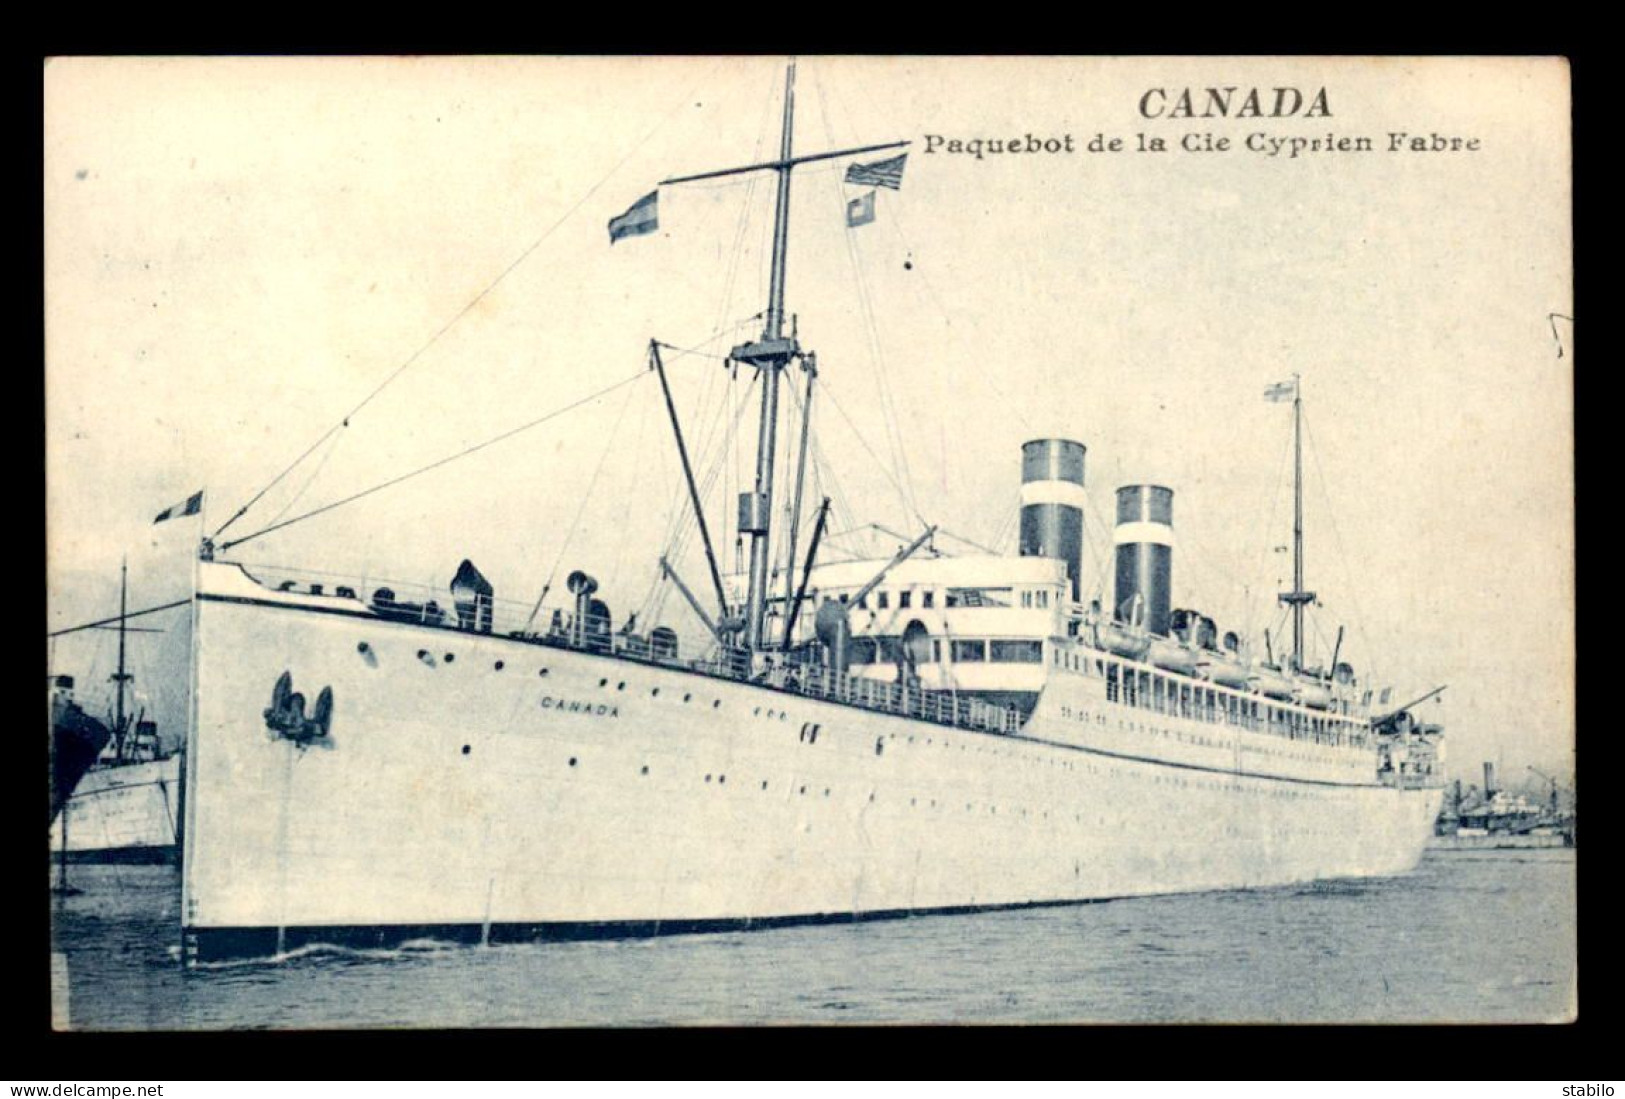 PAQUEBOTS - LE "CANADA" COMPAGNIE CYPRIEN FABRE - Passagiersschepen